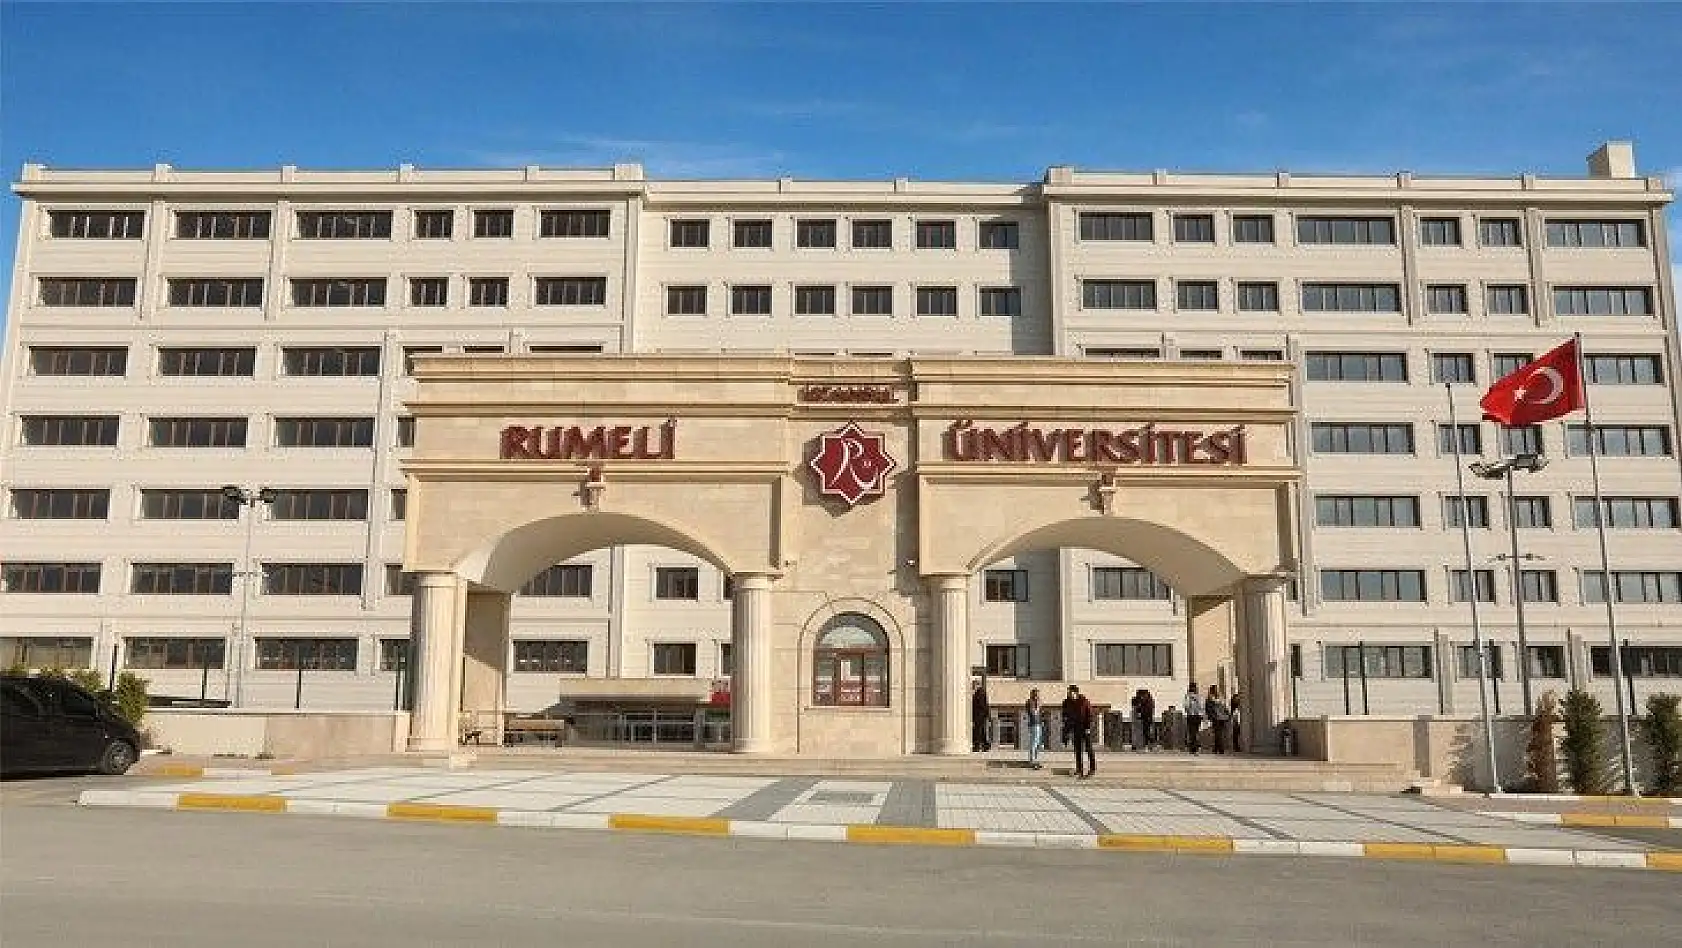 İstanbul Rumeli Üniversitesi 6 öğretim üyesi alacak